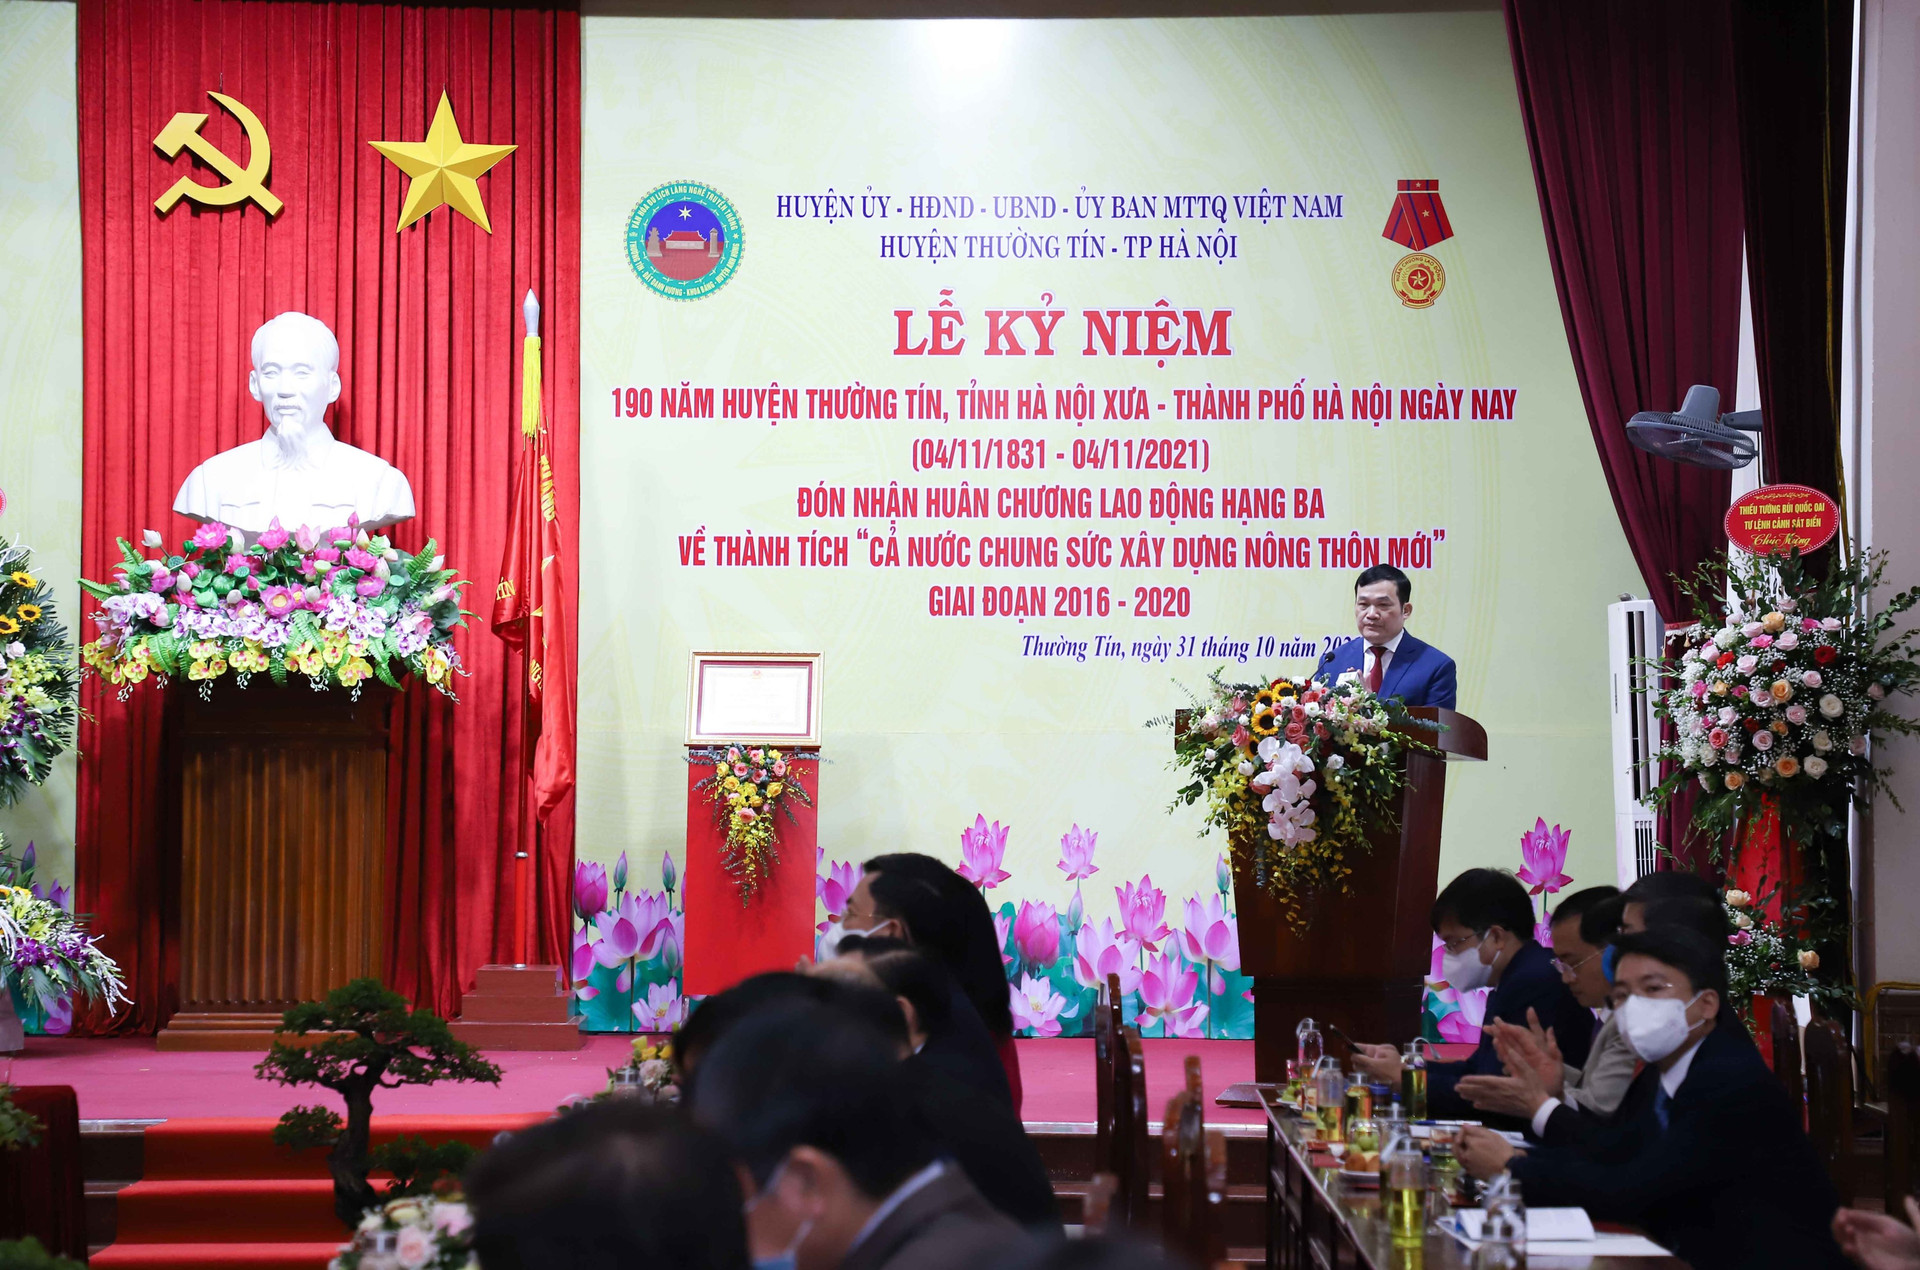 Đồng chí Nguyễn Tiến Minh – Thành ủy viên, Bí thư Huyện ủy phát động phong trào thi đua yêu nước.